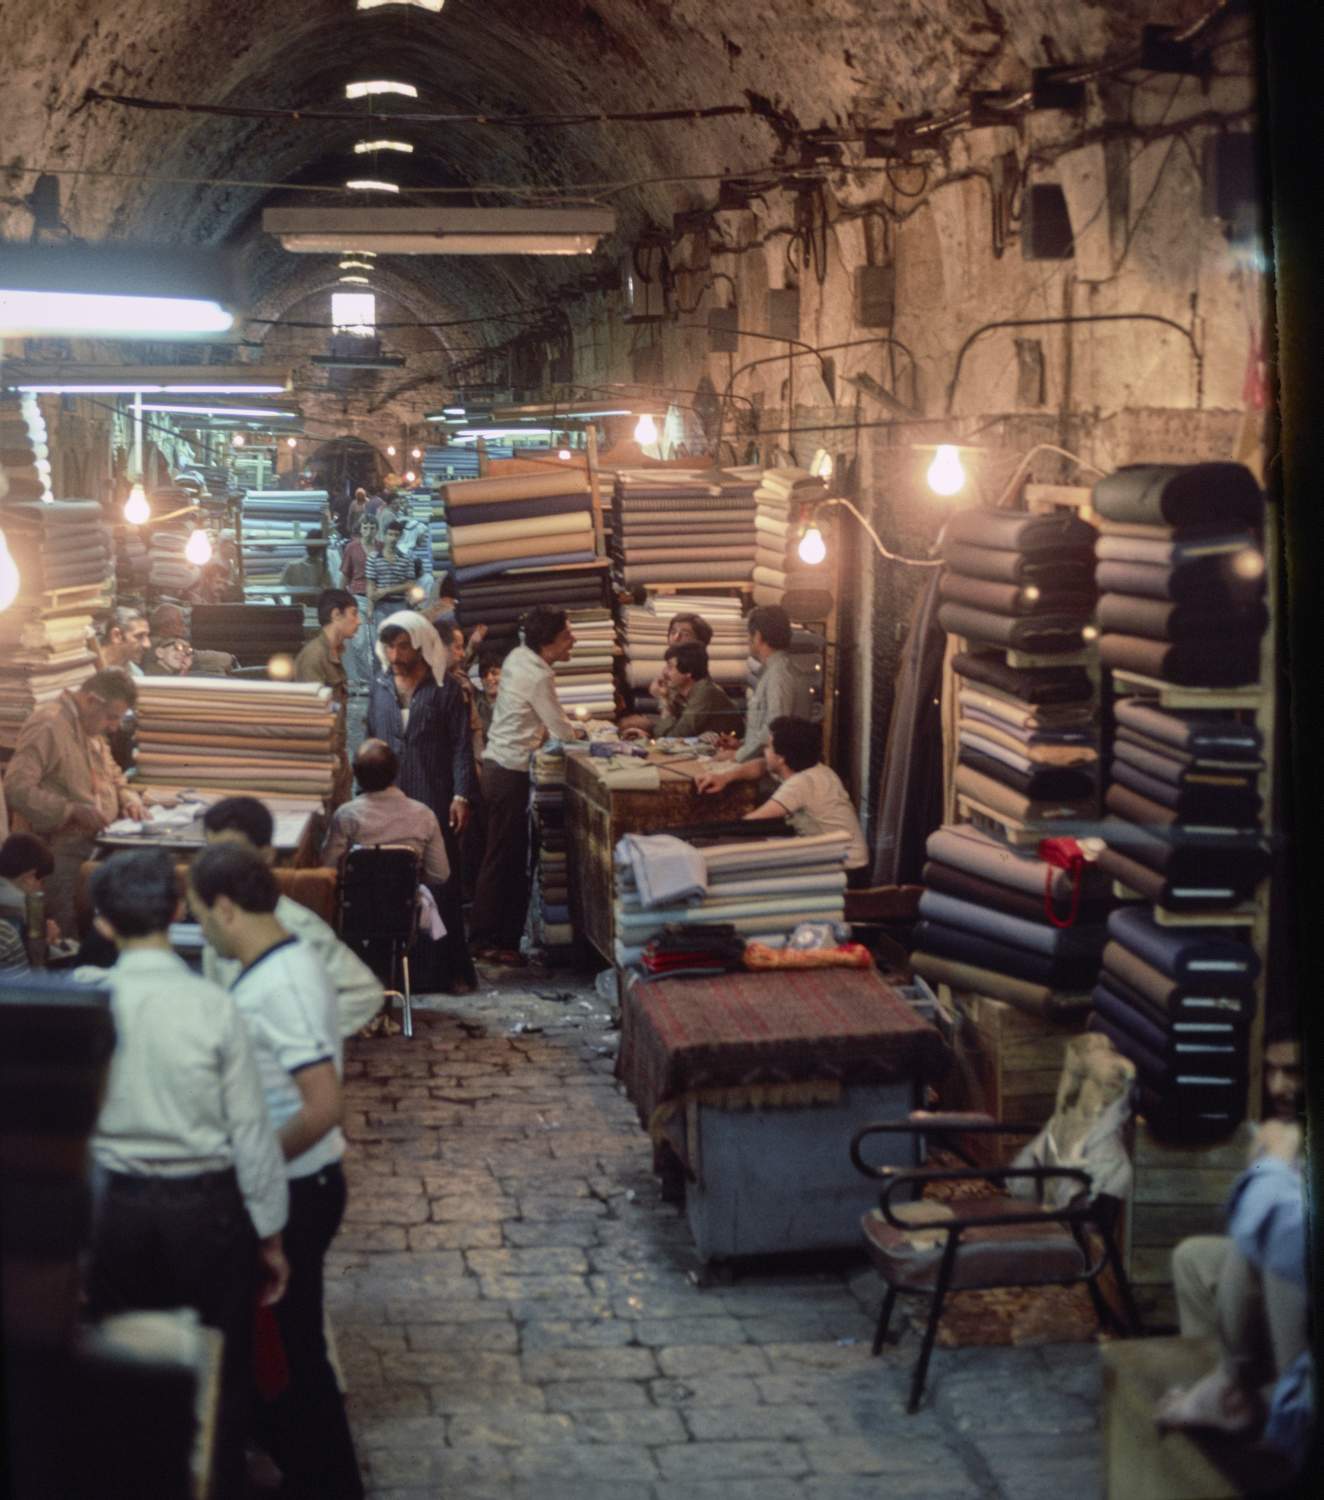 Fabric merchants along a vaulted market street.